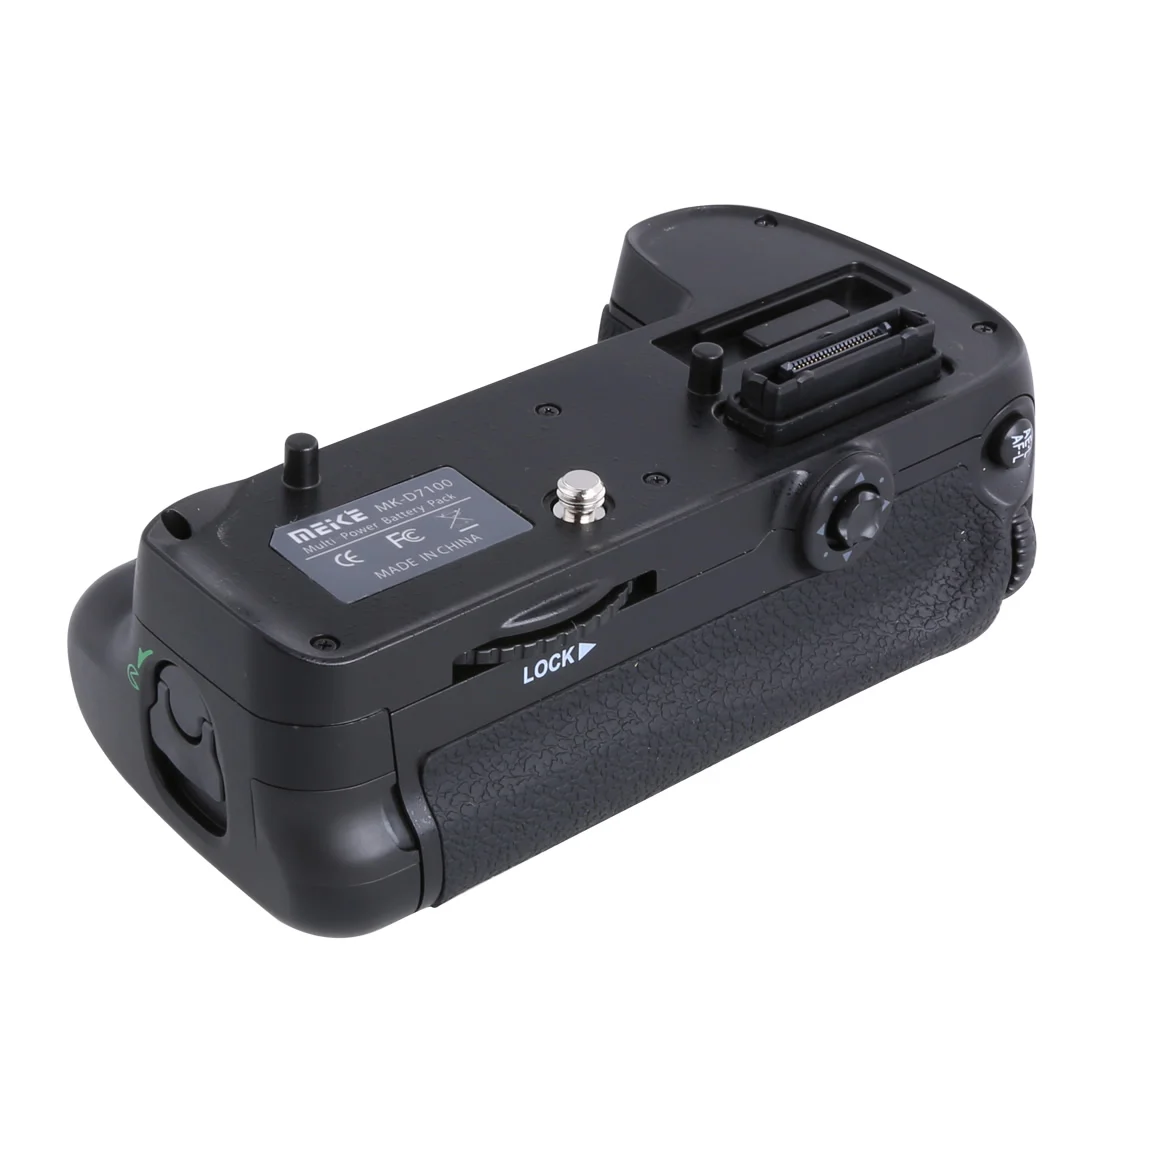 Meike MK-D7100 Вертикальная Батарейная ручка для Nikon D7100/D7200 камера заменить MB-D15, как EN-EL15